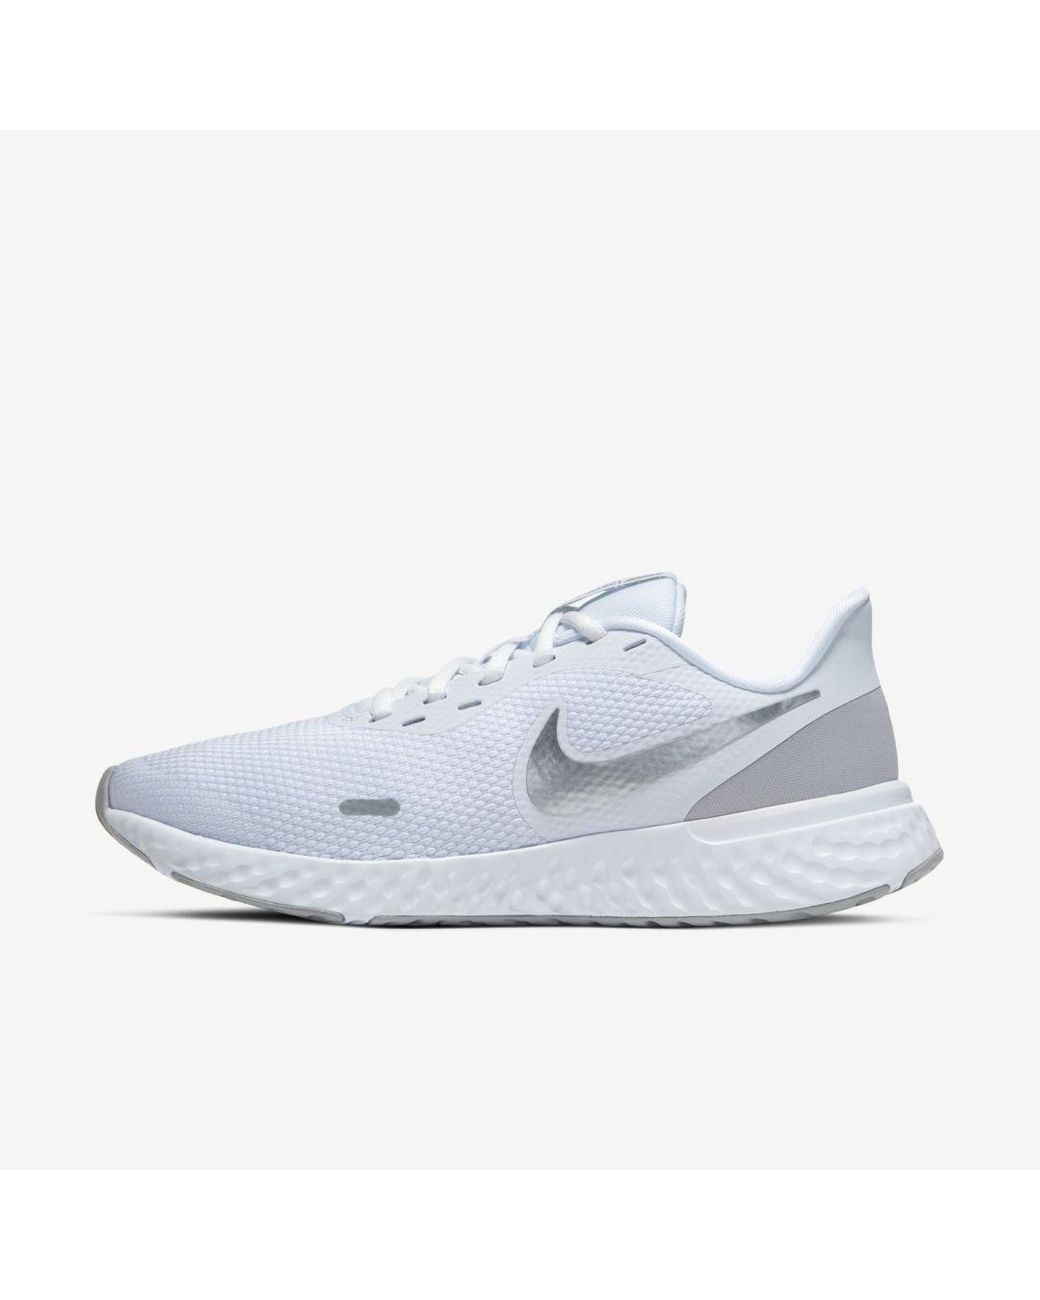 Nike Rubber Revolution 5 Running Shoe in White - Lyst